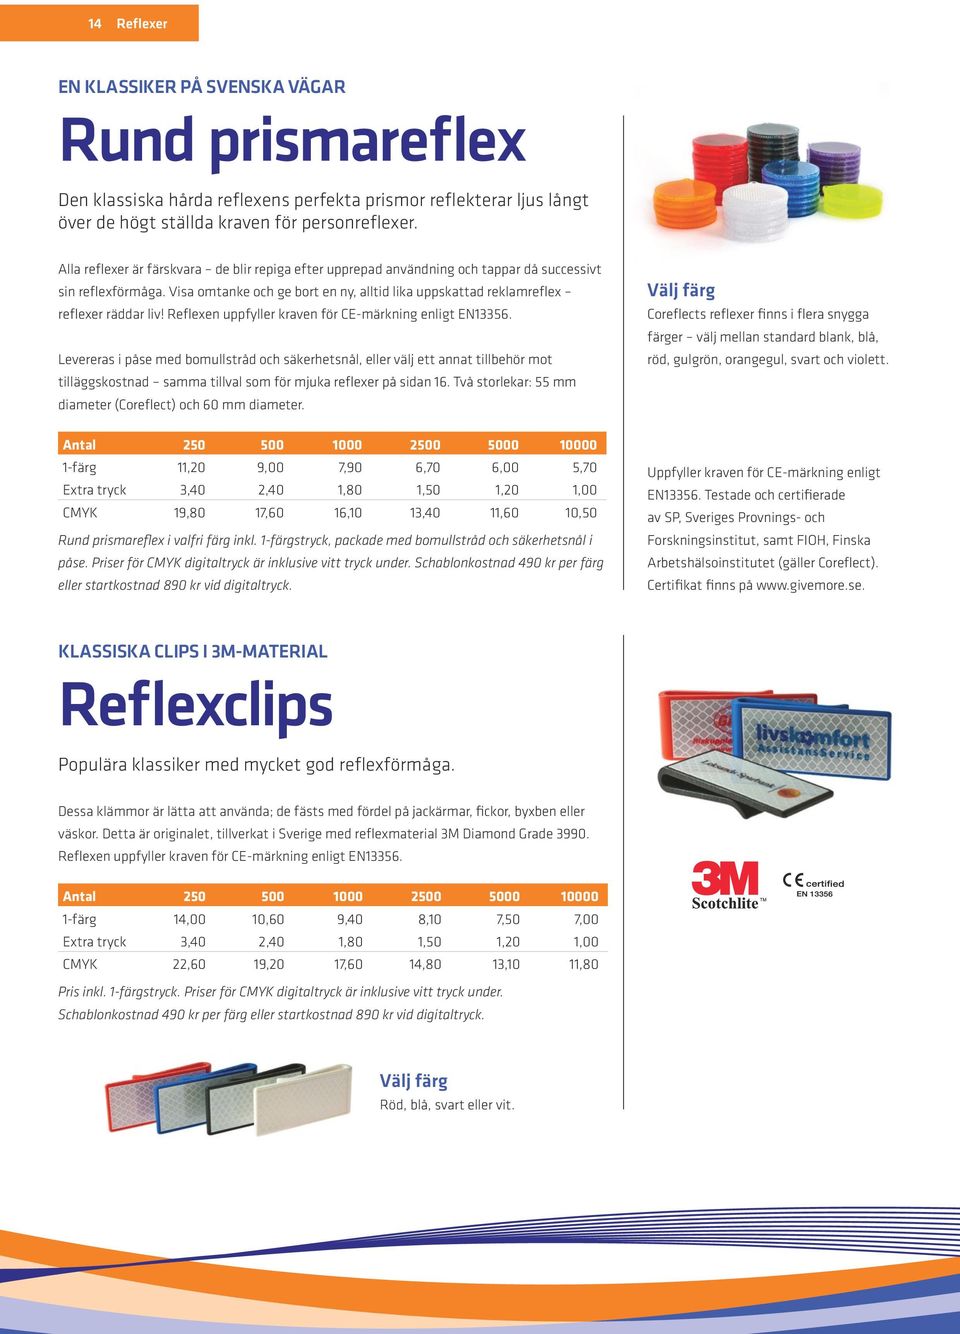 Reflexen uppfyller kraven för CE-märkning enligt EN13356.